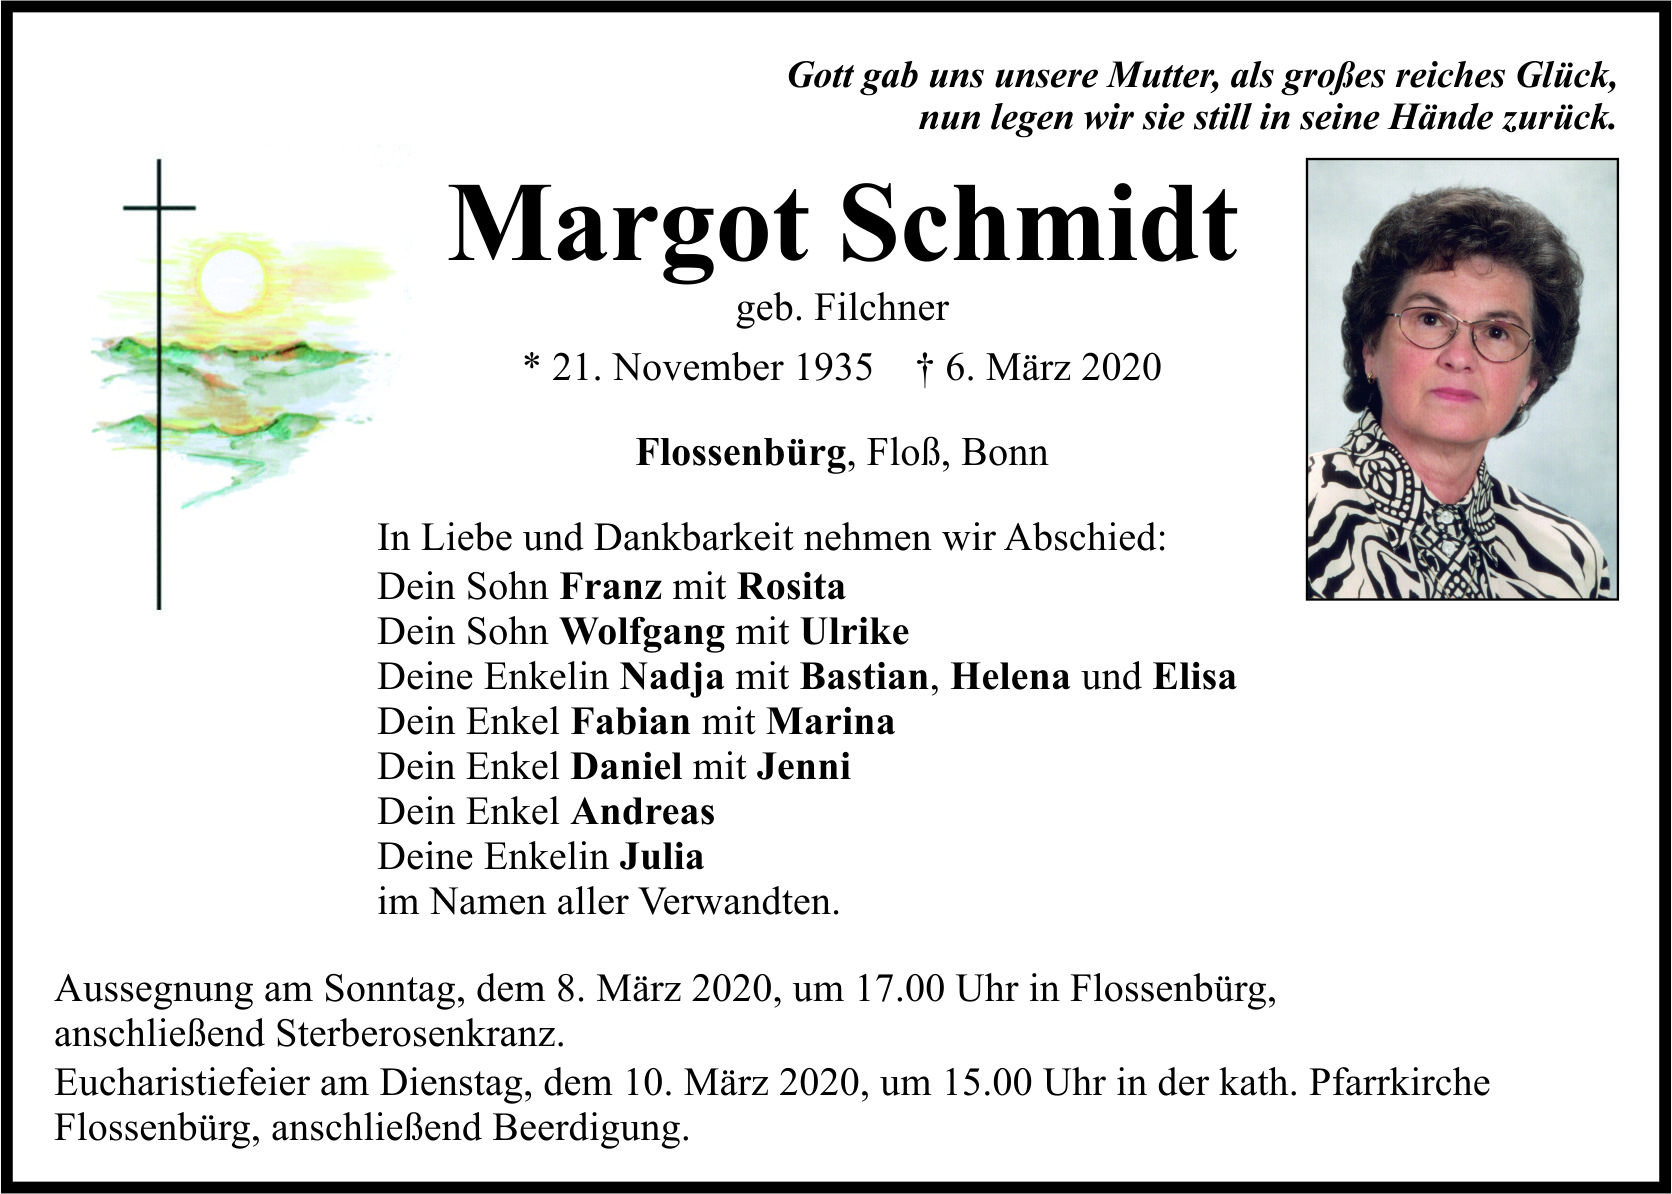 Traueranzeige Margot Schmidt, Flossenbürg Floß